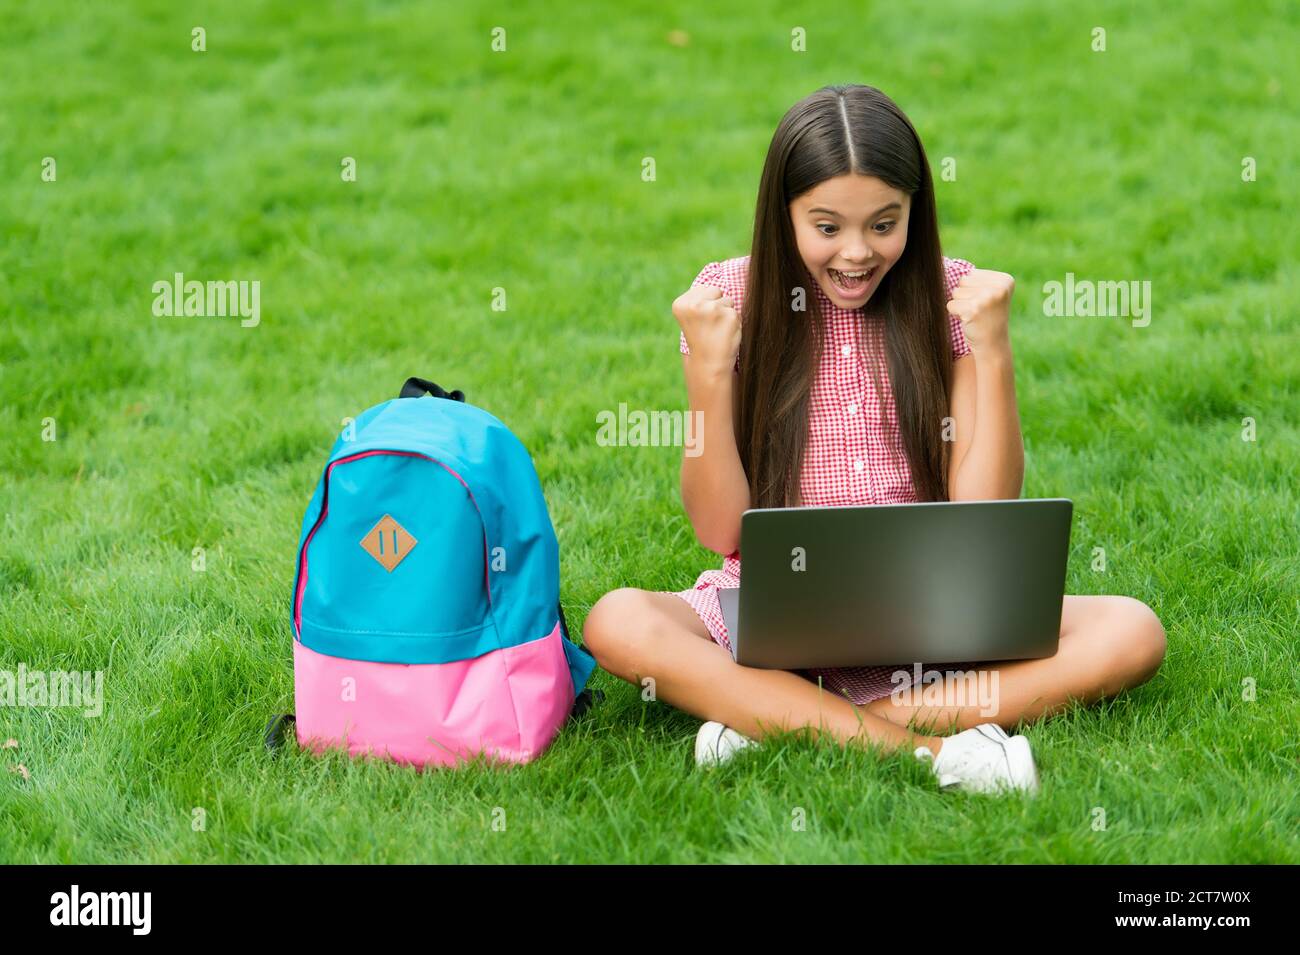 bonne fille assise sur l'herbe verte avec un ordinateur portable. Démarrage. Enfant jouant jeu d'ordinateur. Retour à l'école. Éducation en ligne. Journée de la connaissance. Cours privé d'apprentissage des enfants. Blogging. Banque D'Images